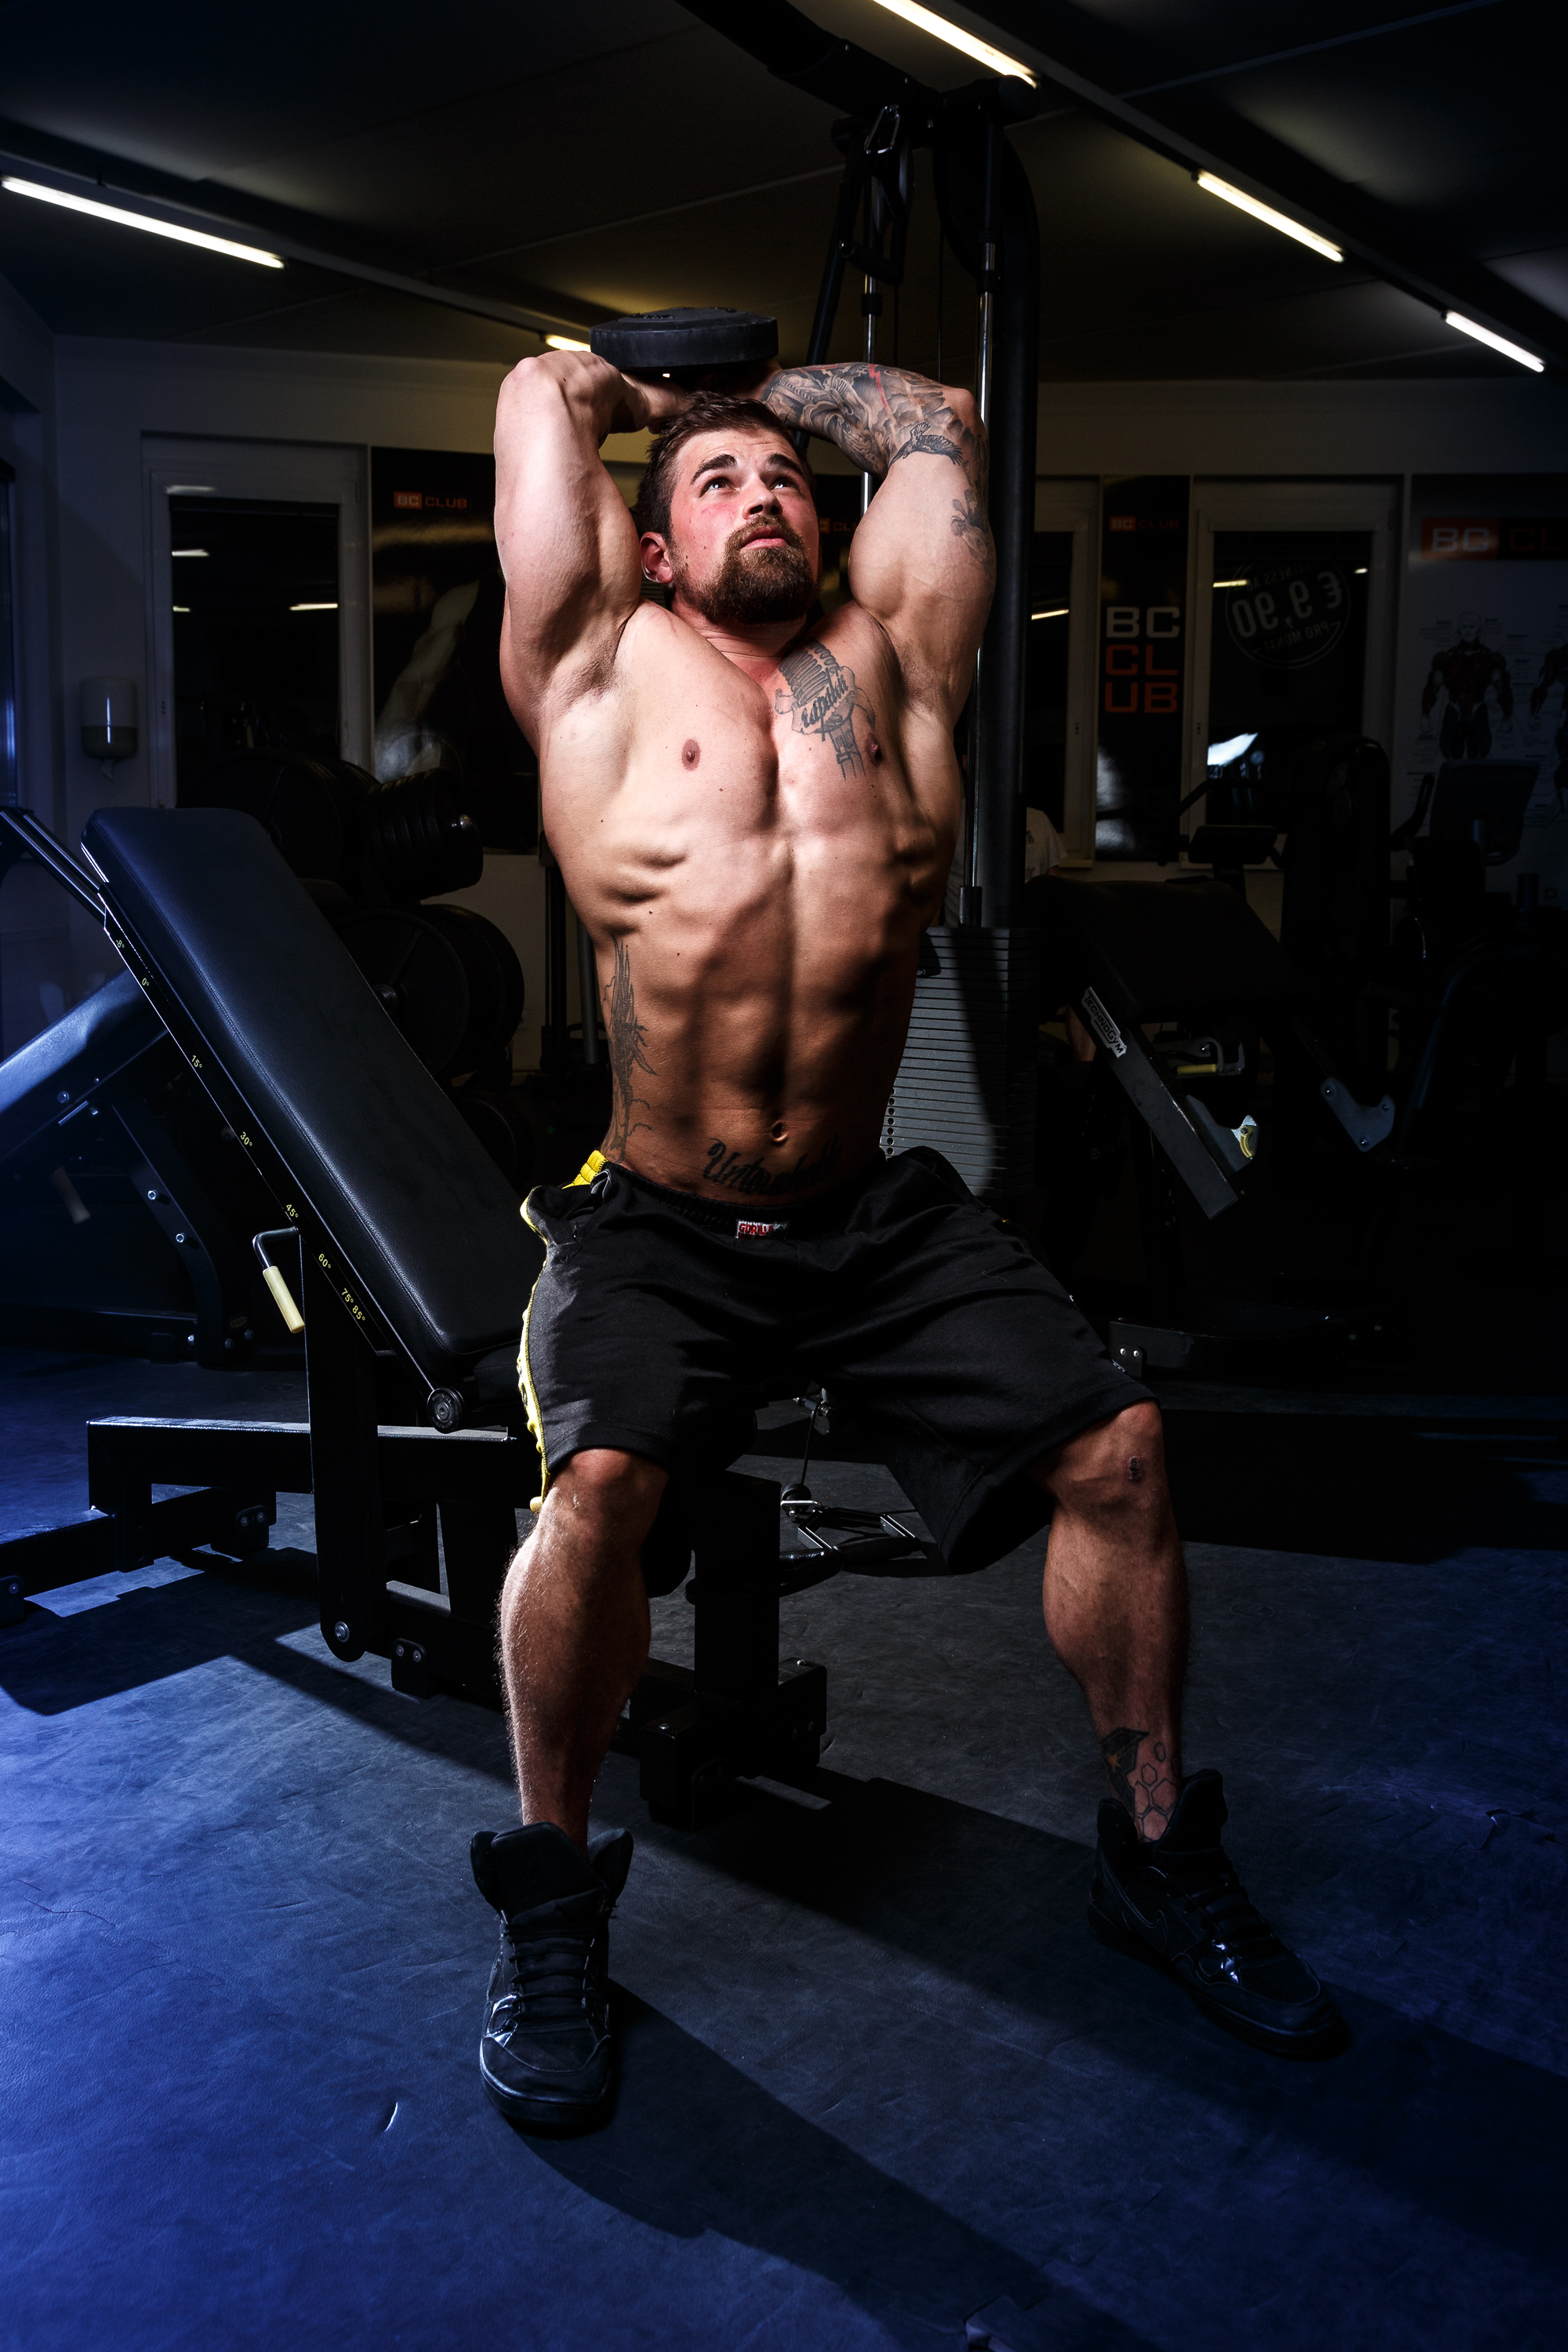 Bodybuilder-Michael-Sauseng-rawpix.at-4019.jpg